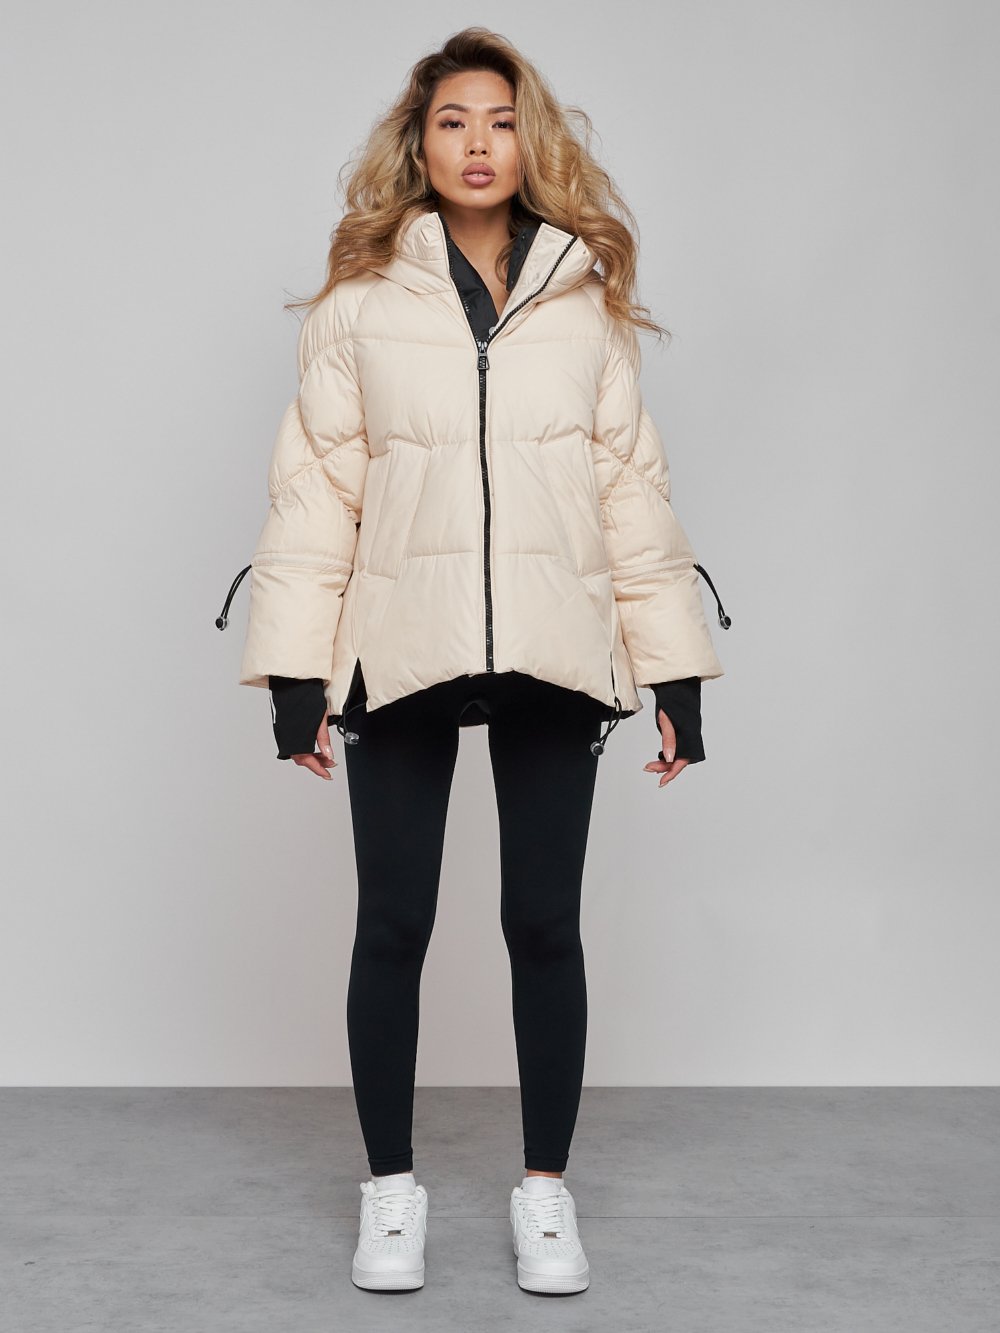 Купить оптом Зимняя женская куртка модная с капюшоном бежевого цвета 52306B в Казани